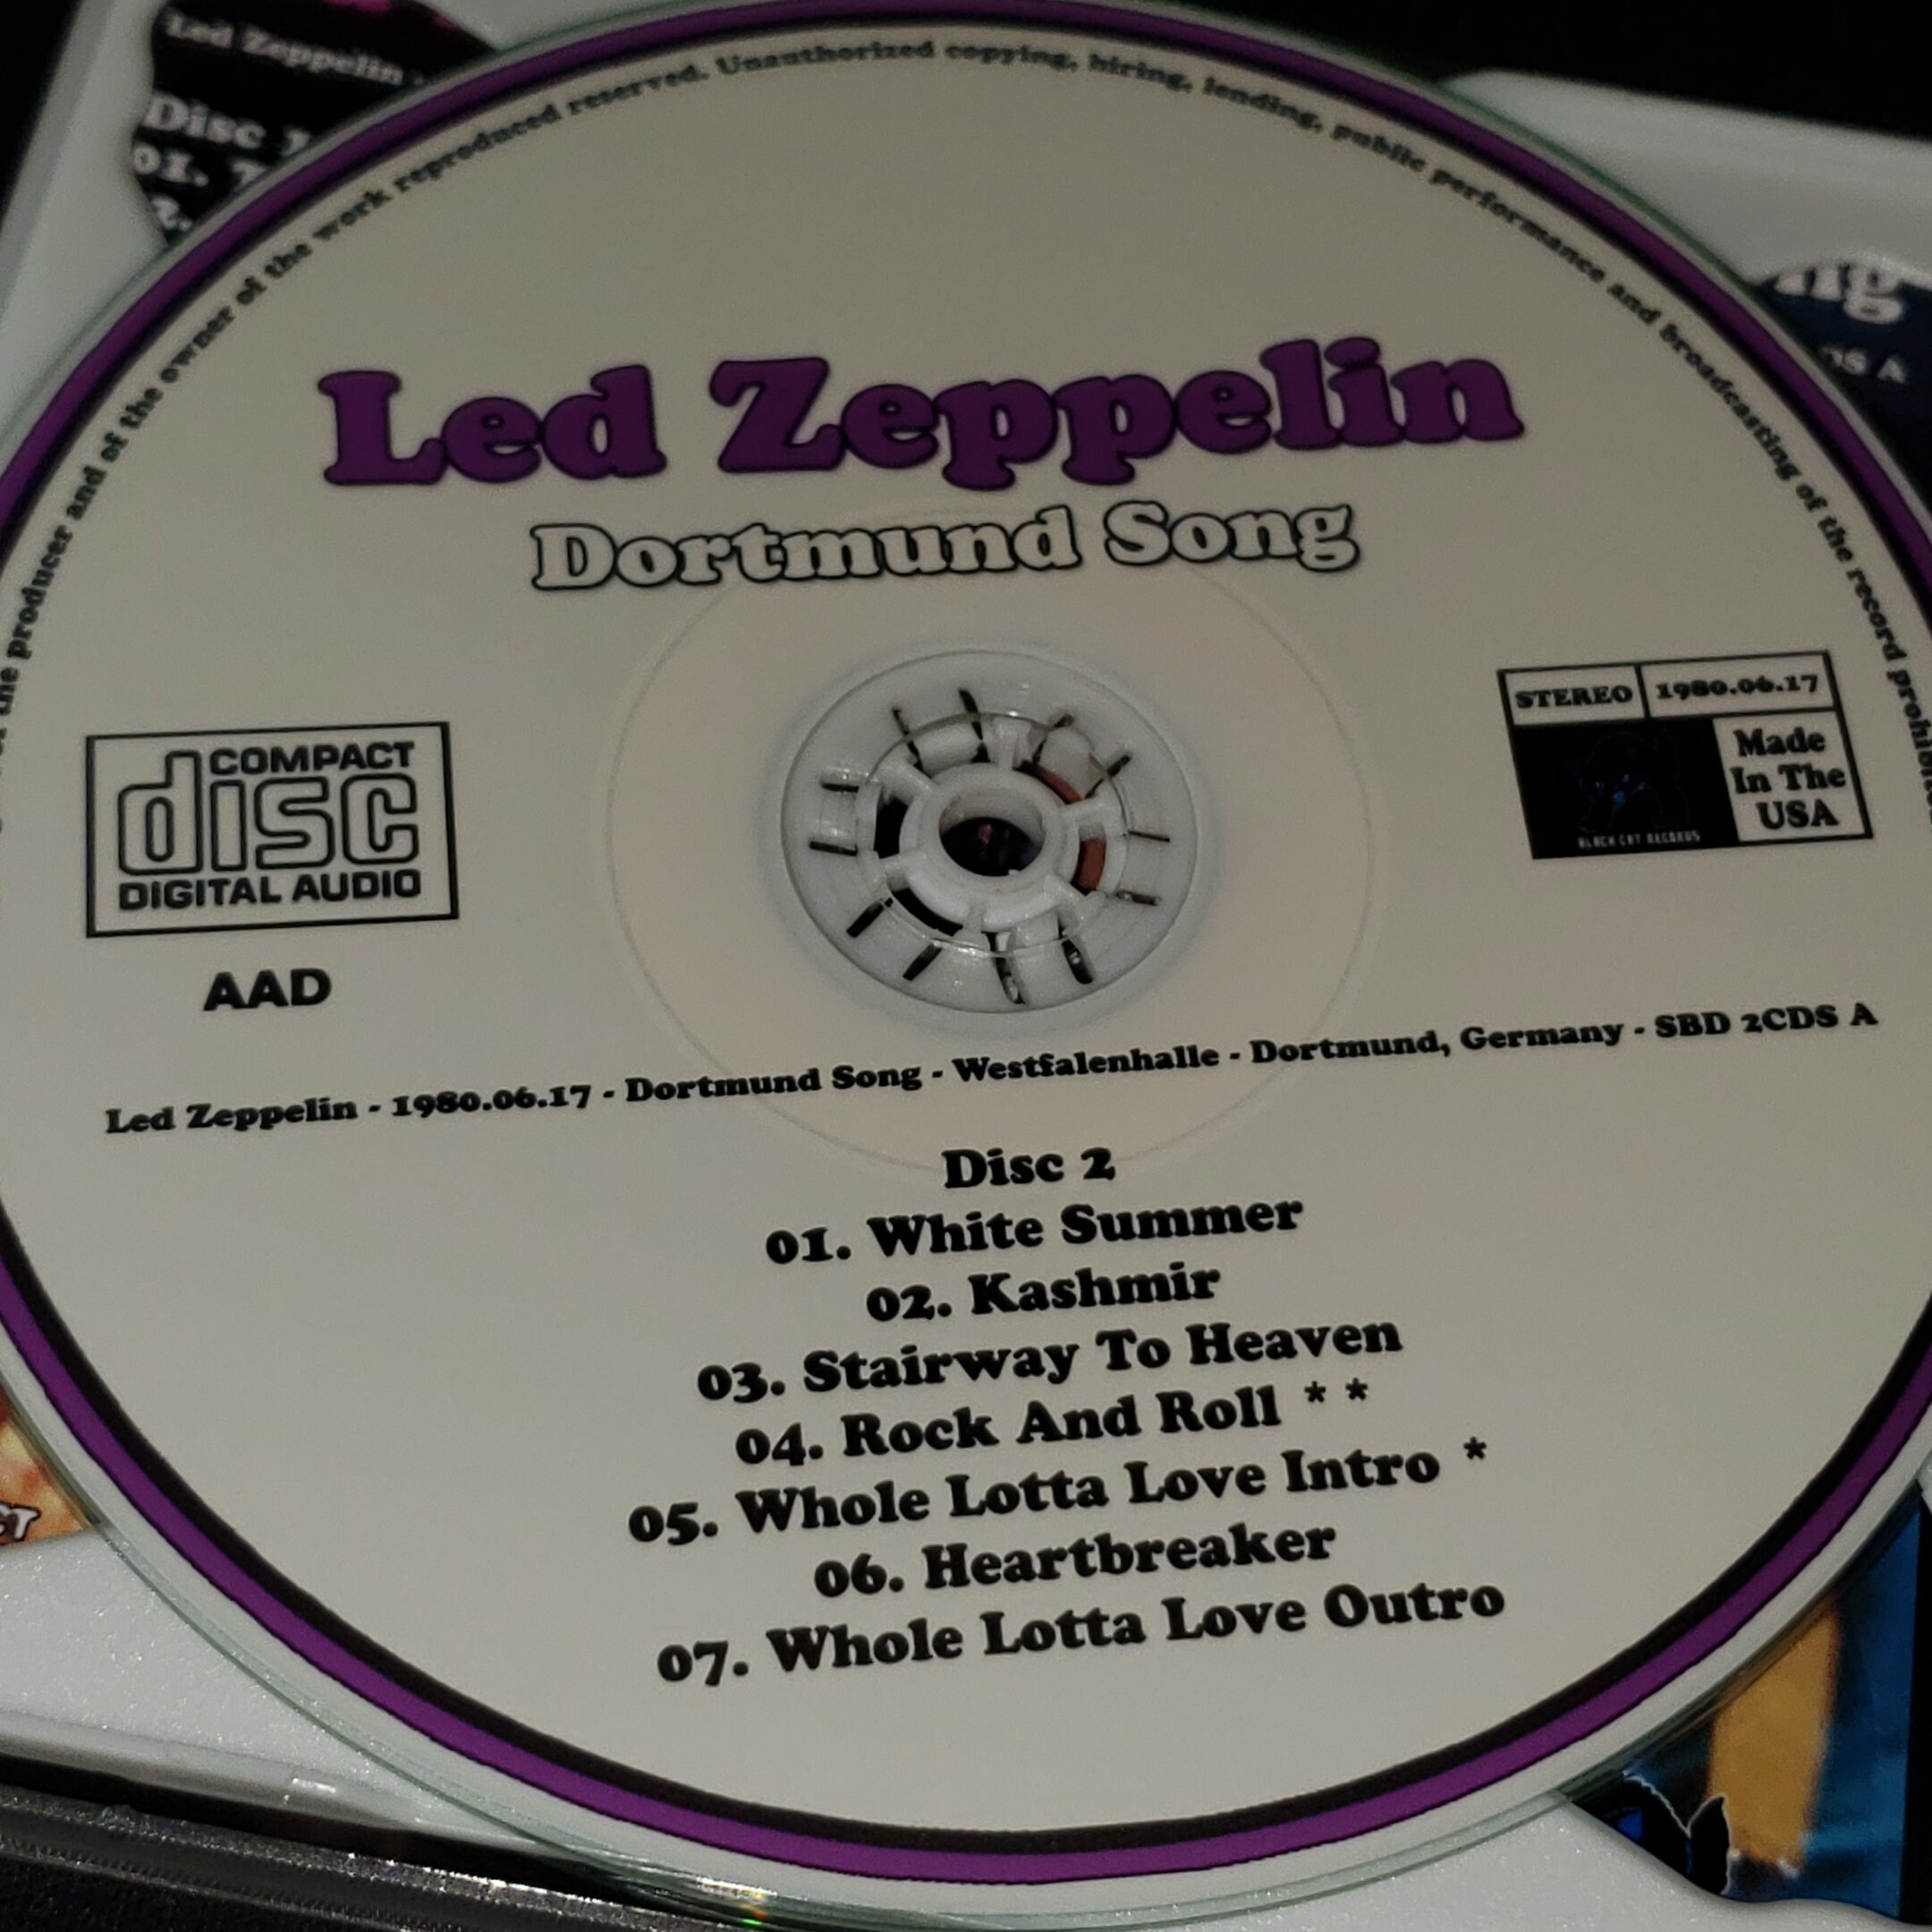 Led Zeppelin Live 2 CD Set Dortmund Song Live in 1980 Germany